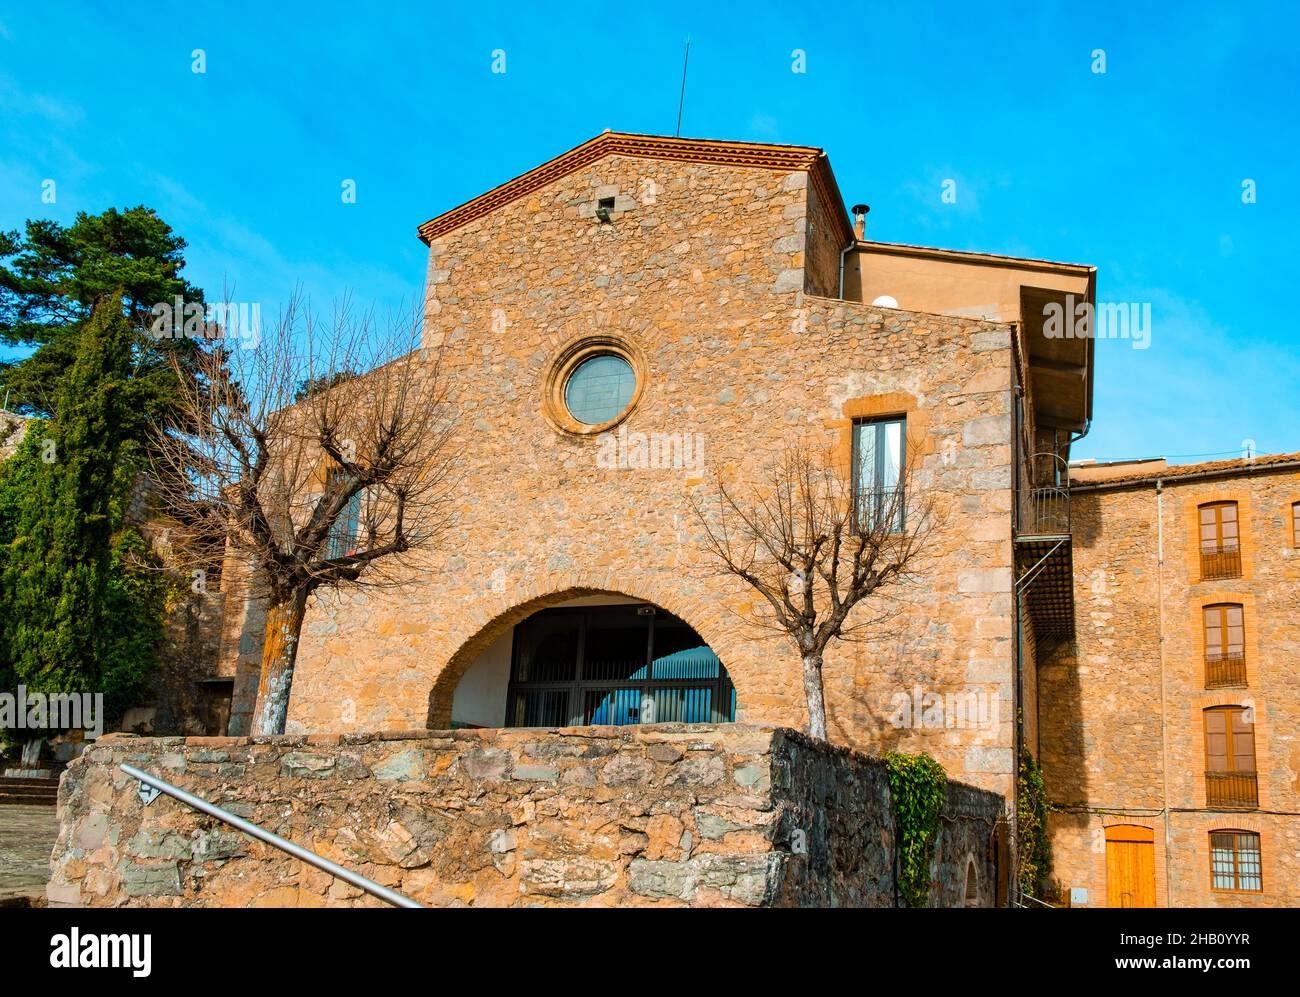 a view of the facade of the Mare de Deu de Queralt Shrine, in Berga, Catalonia, Spain Stock Photo